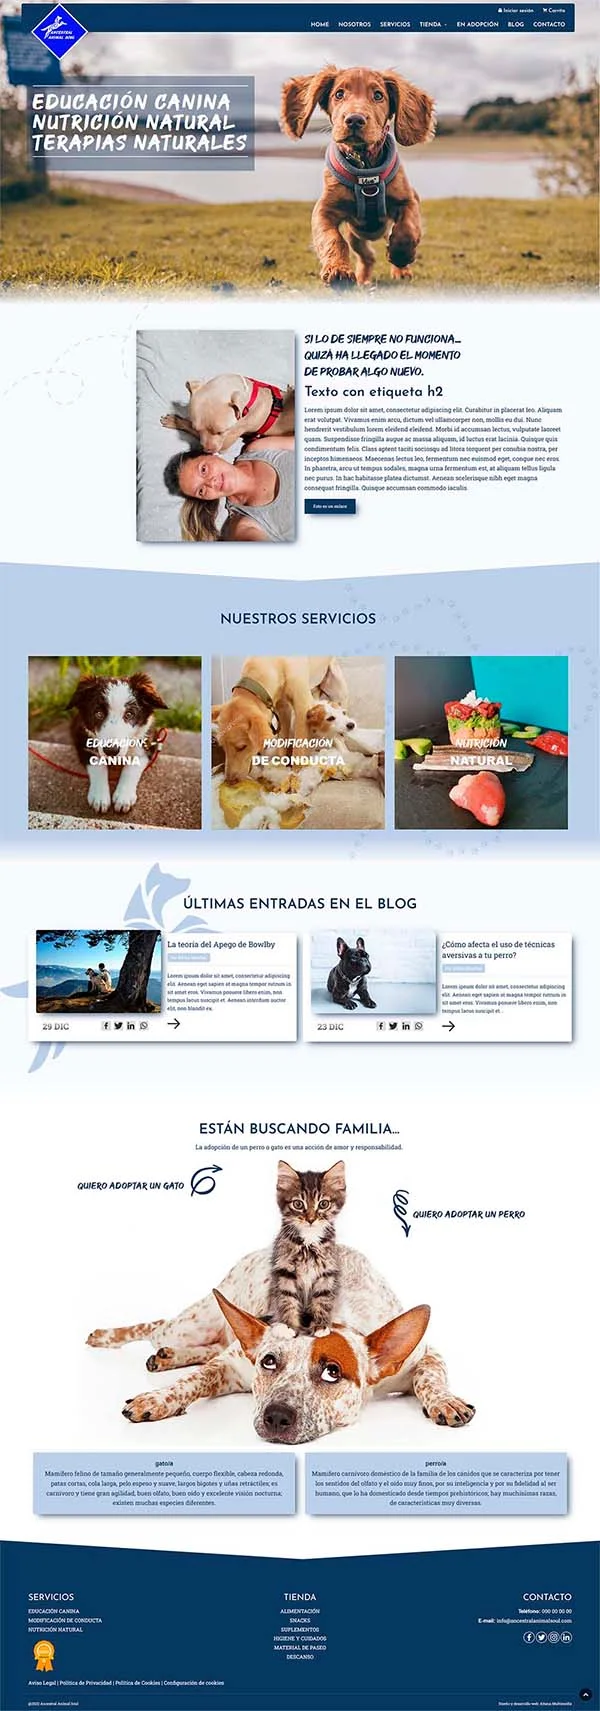 Diseño Página web Servicios caninos - Ancestral Animal Soul - Educación y nutrición canina. Tienda online.